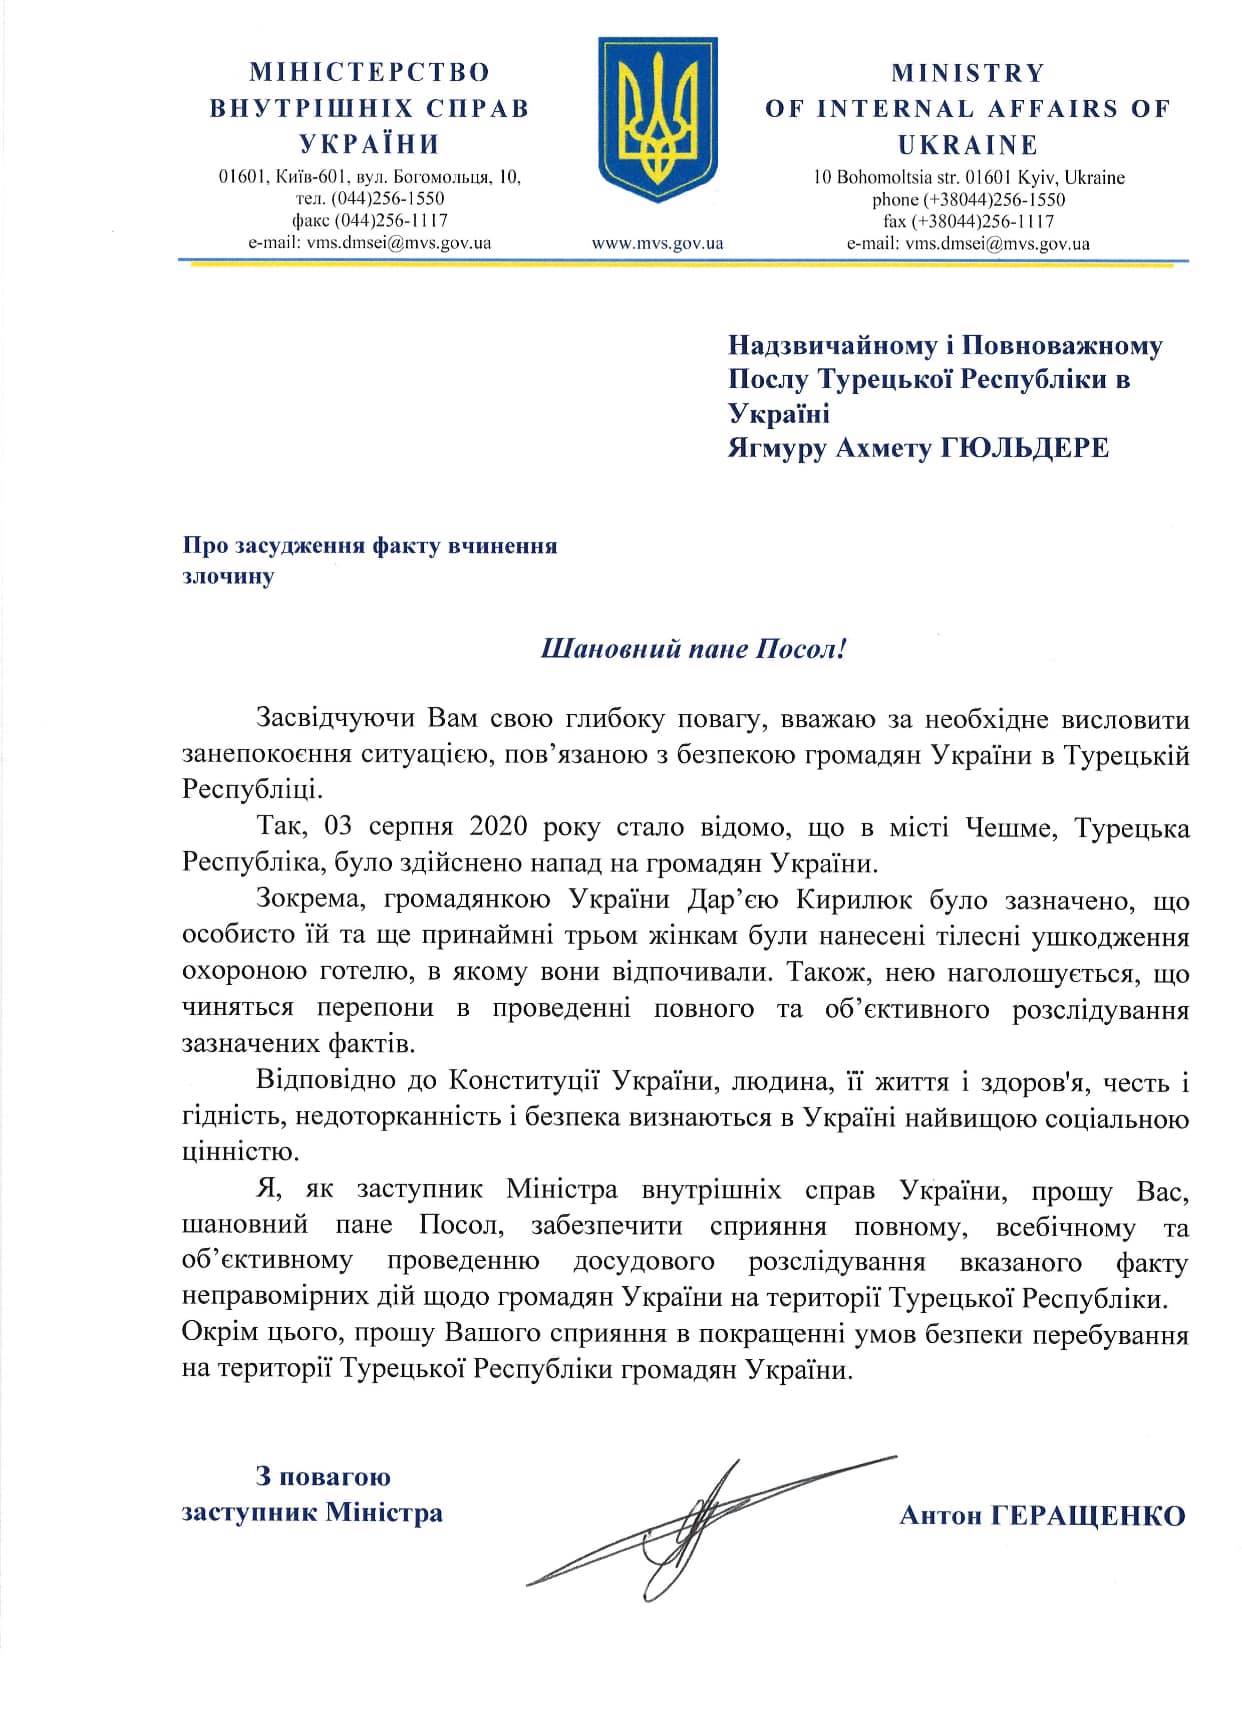 Геращенко призвал посла Турции поспособствовать справедливому расследованию избиения украинской модели. Скан: МВД Украины в Фейсбук